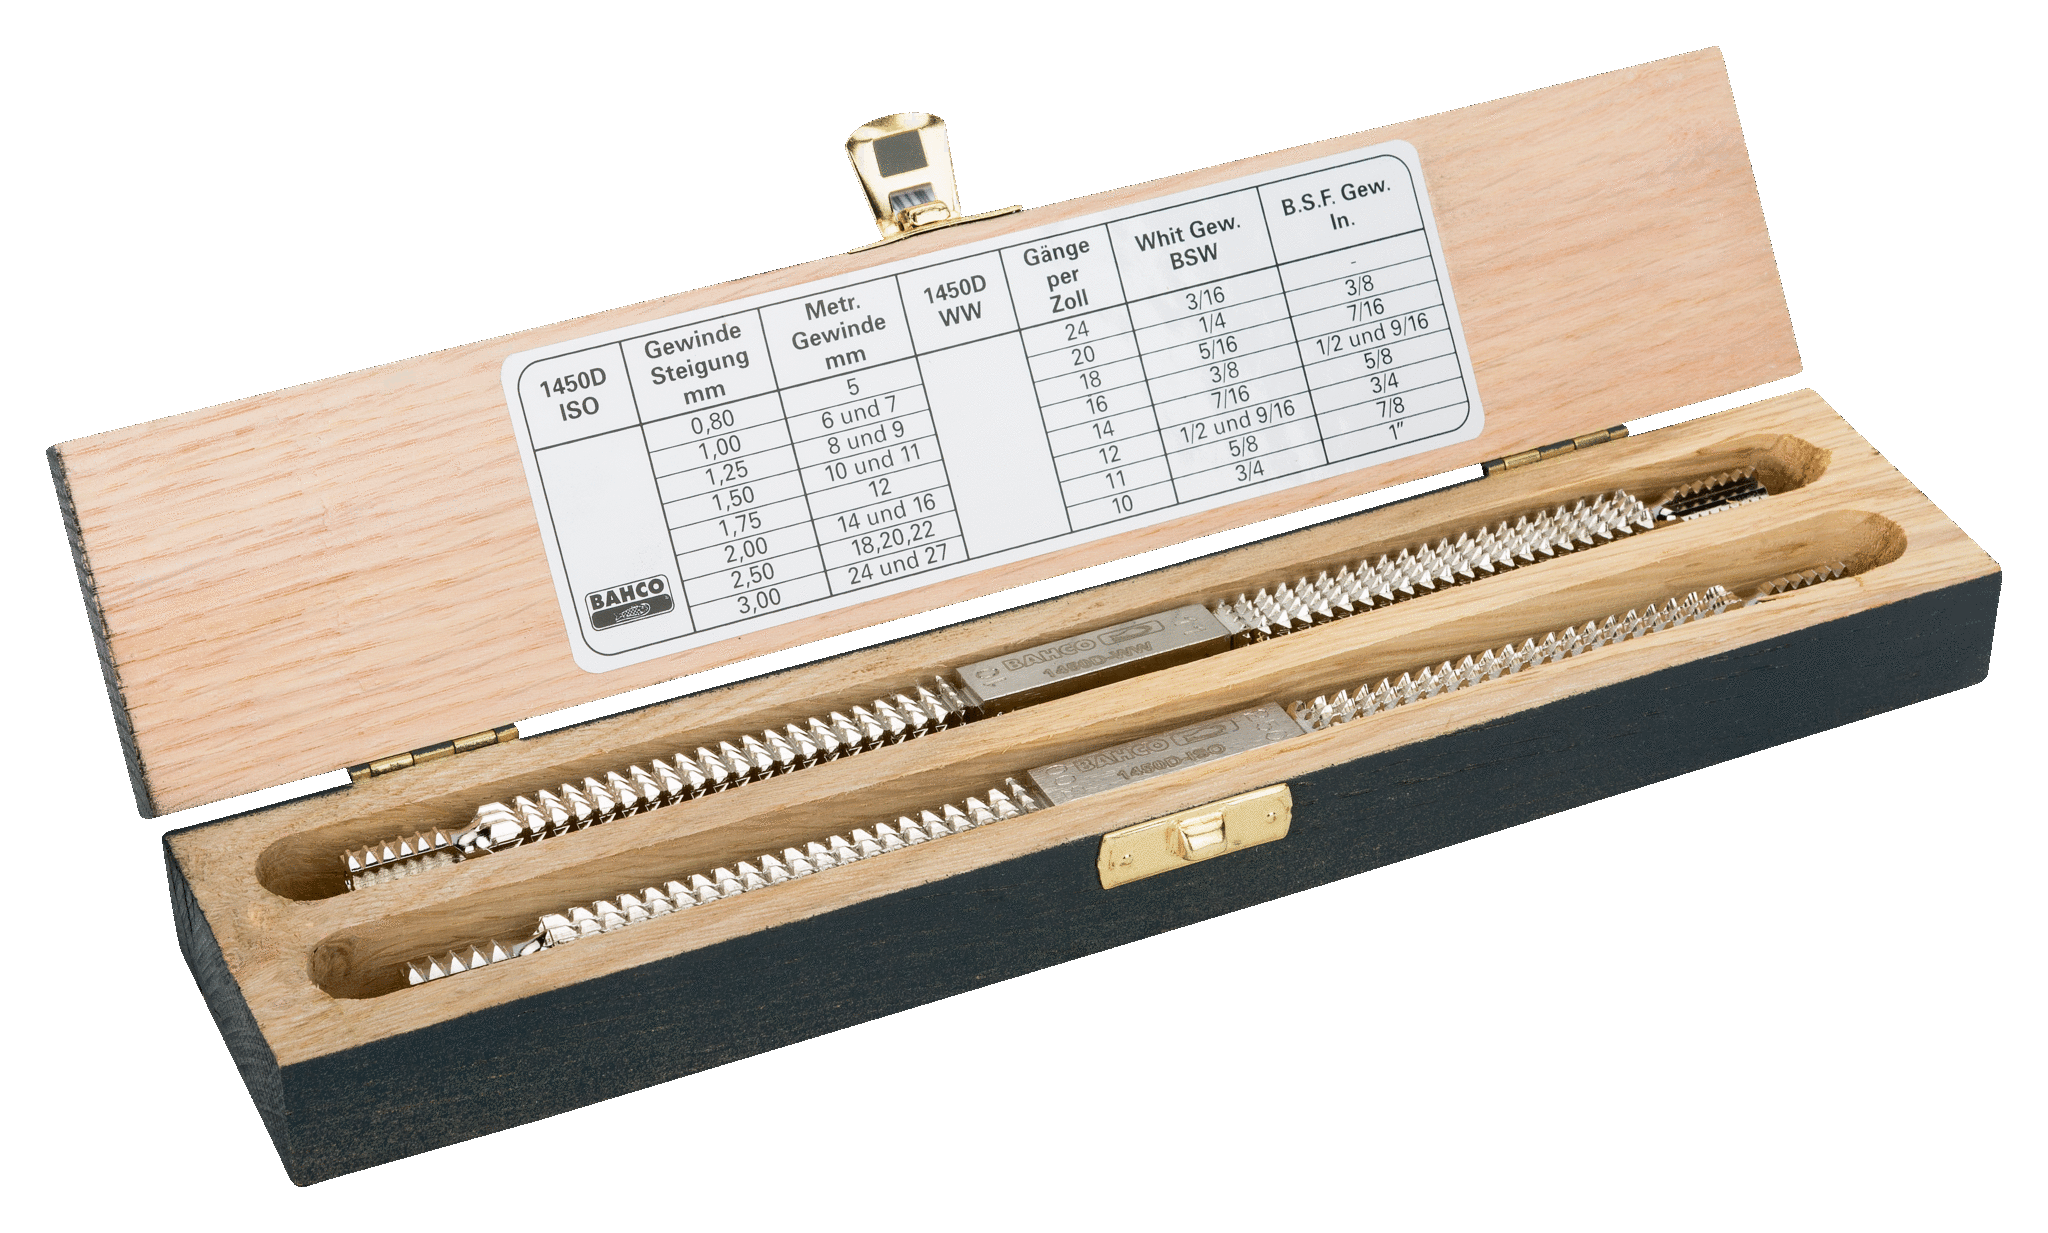 Набор восстановителей двухзаходной резьбы, деревянный ящик BAHCO 1450D/2